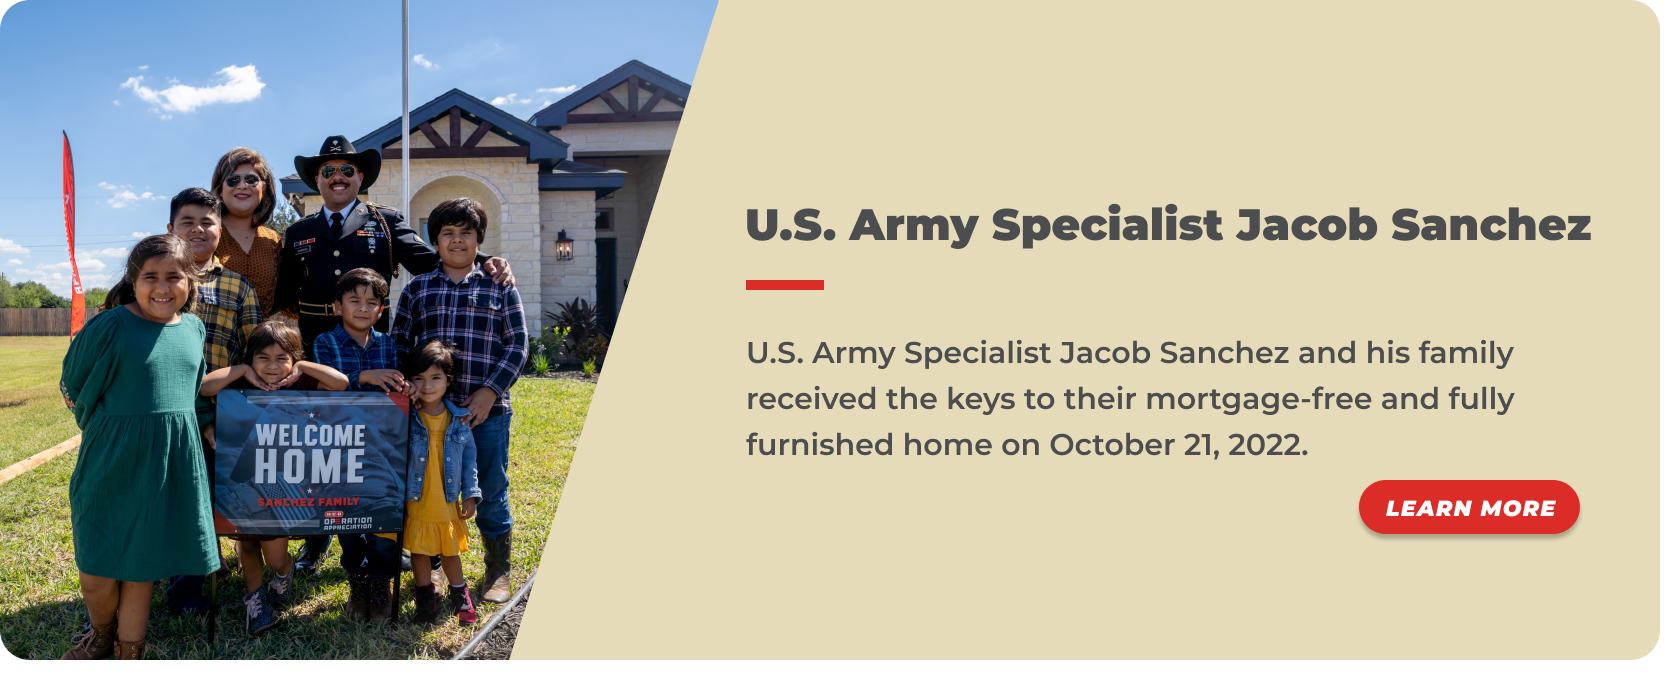 38 - U.S. Army Specialist Jacob Sanchez